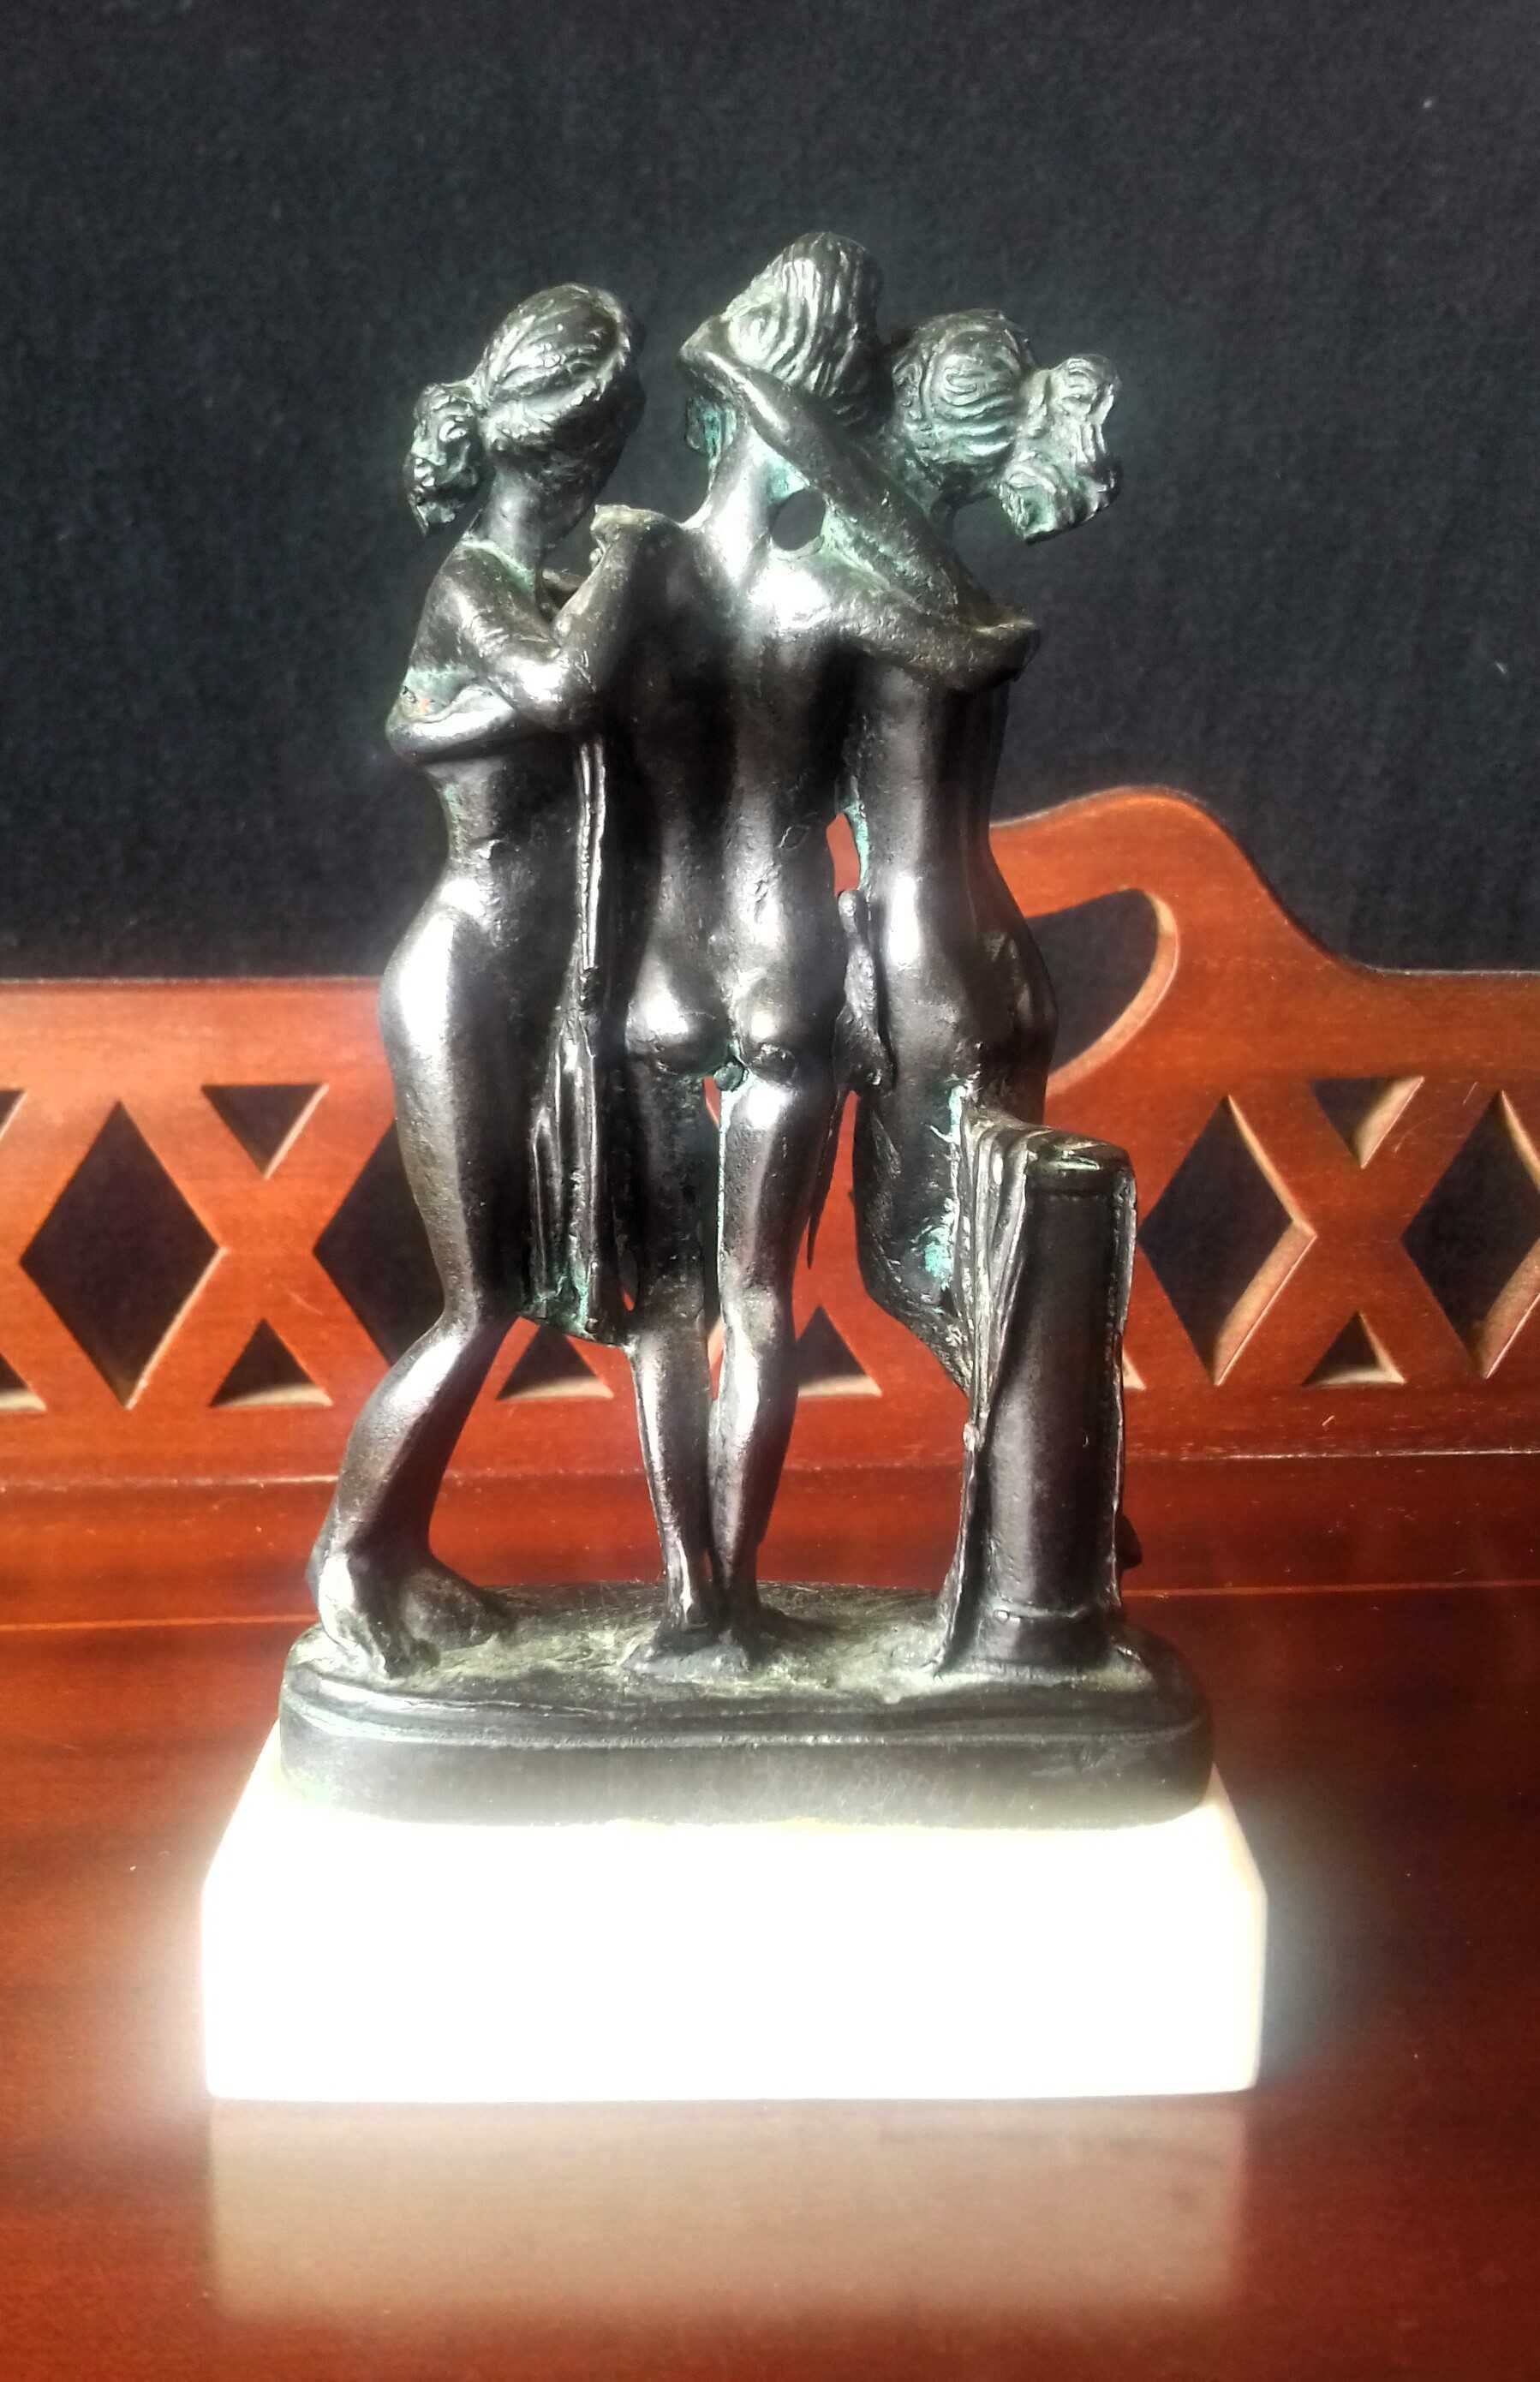 Estatueta de Bronze - As Três Graças